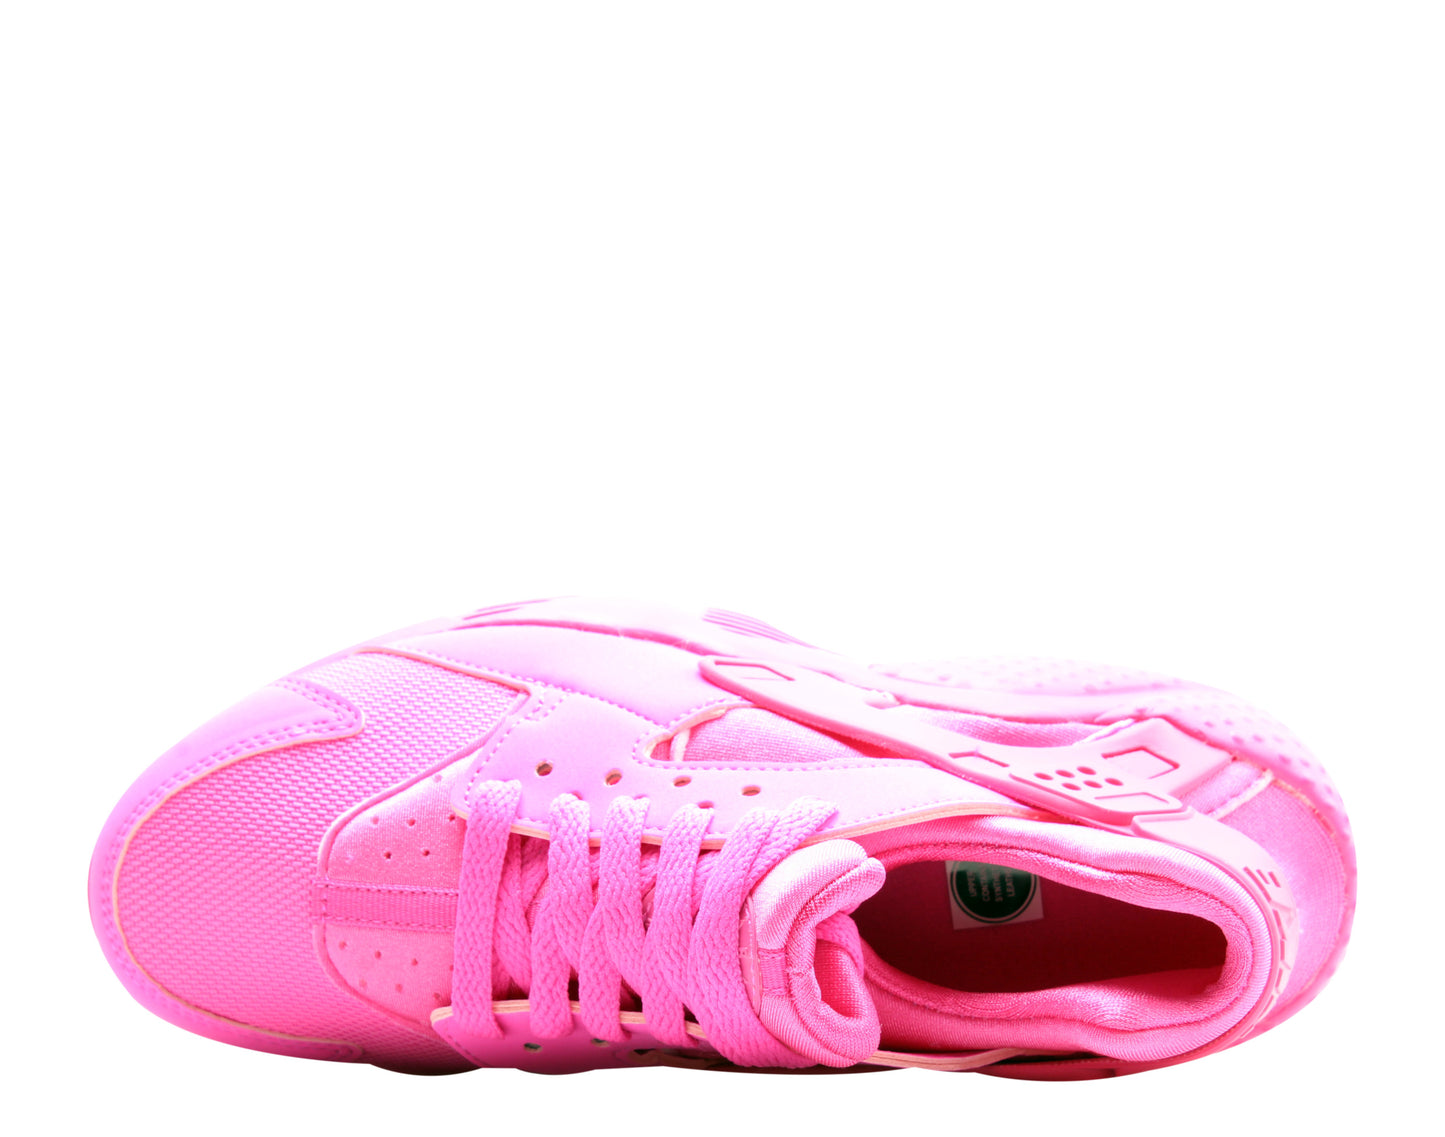 Nike Huarache Run (GS) Laser Fuchsia Big Kids Girls Running Shoes 654275-607